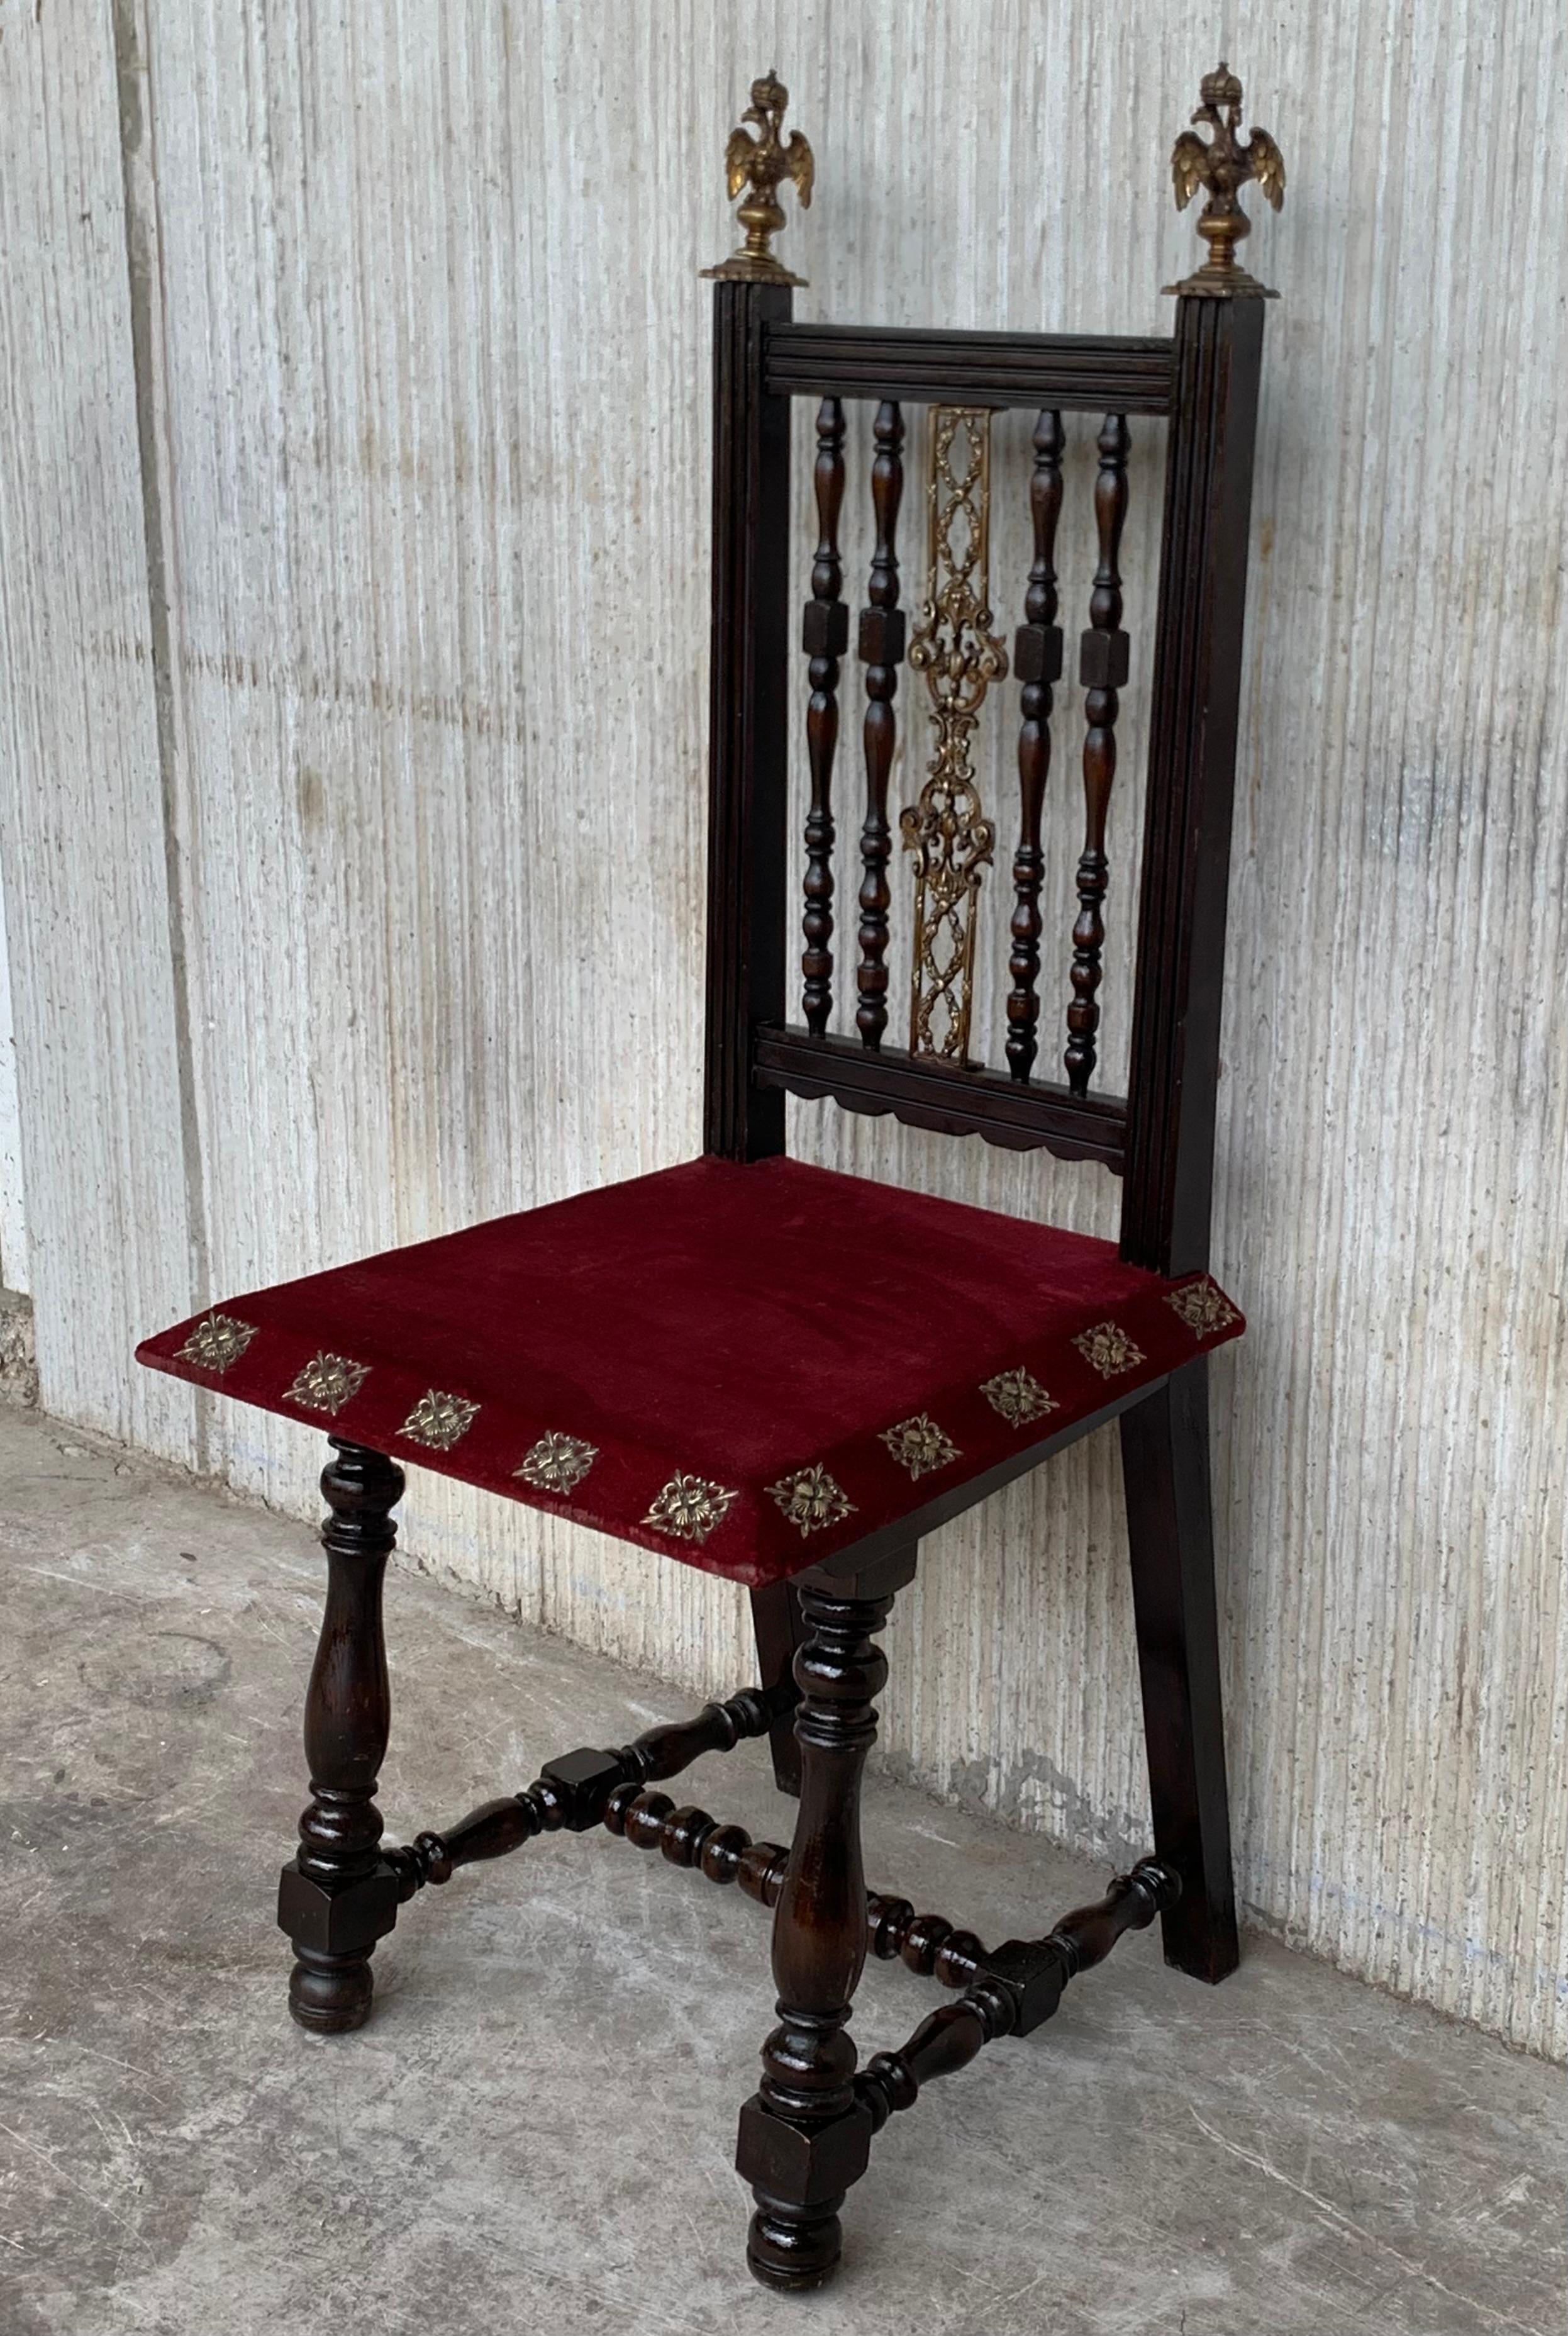 19. Satz von sechs spanischen Stühlen mit Bronzedetails und roter Samtpolsterung.
 
   